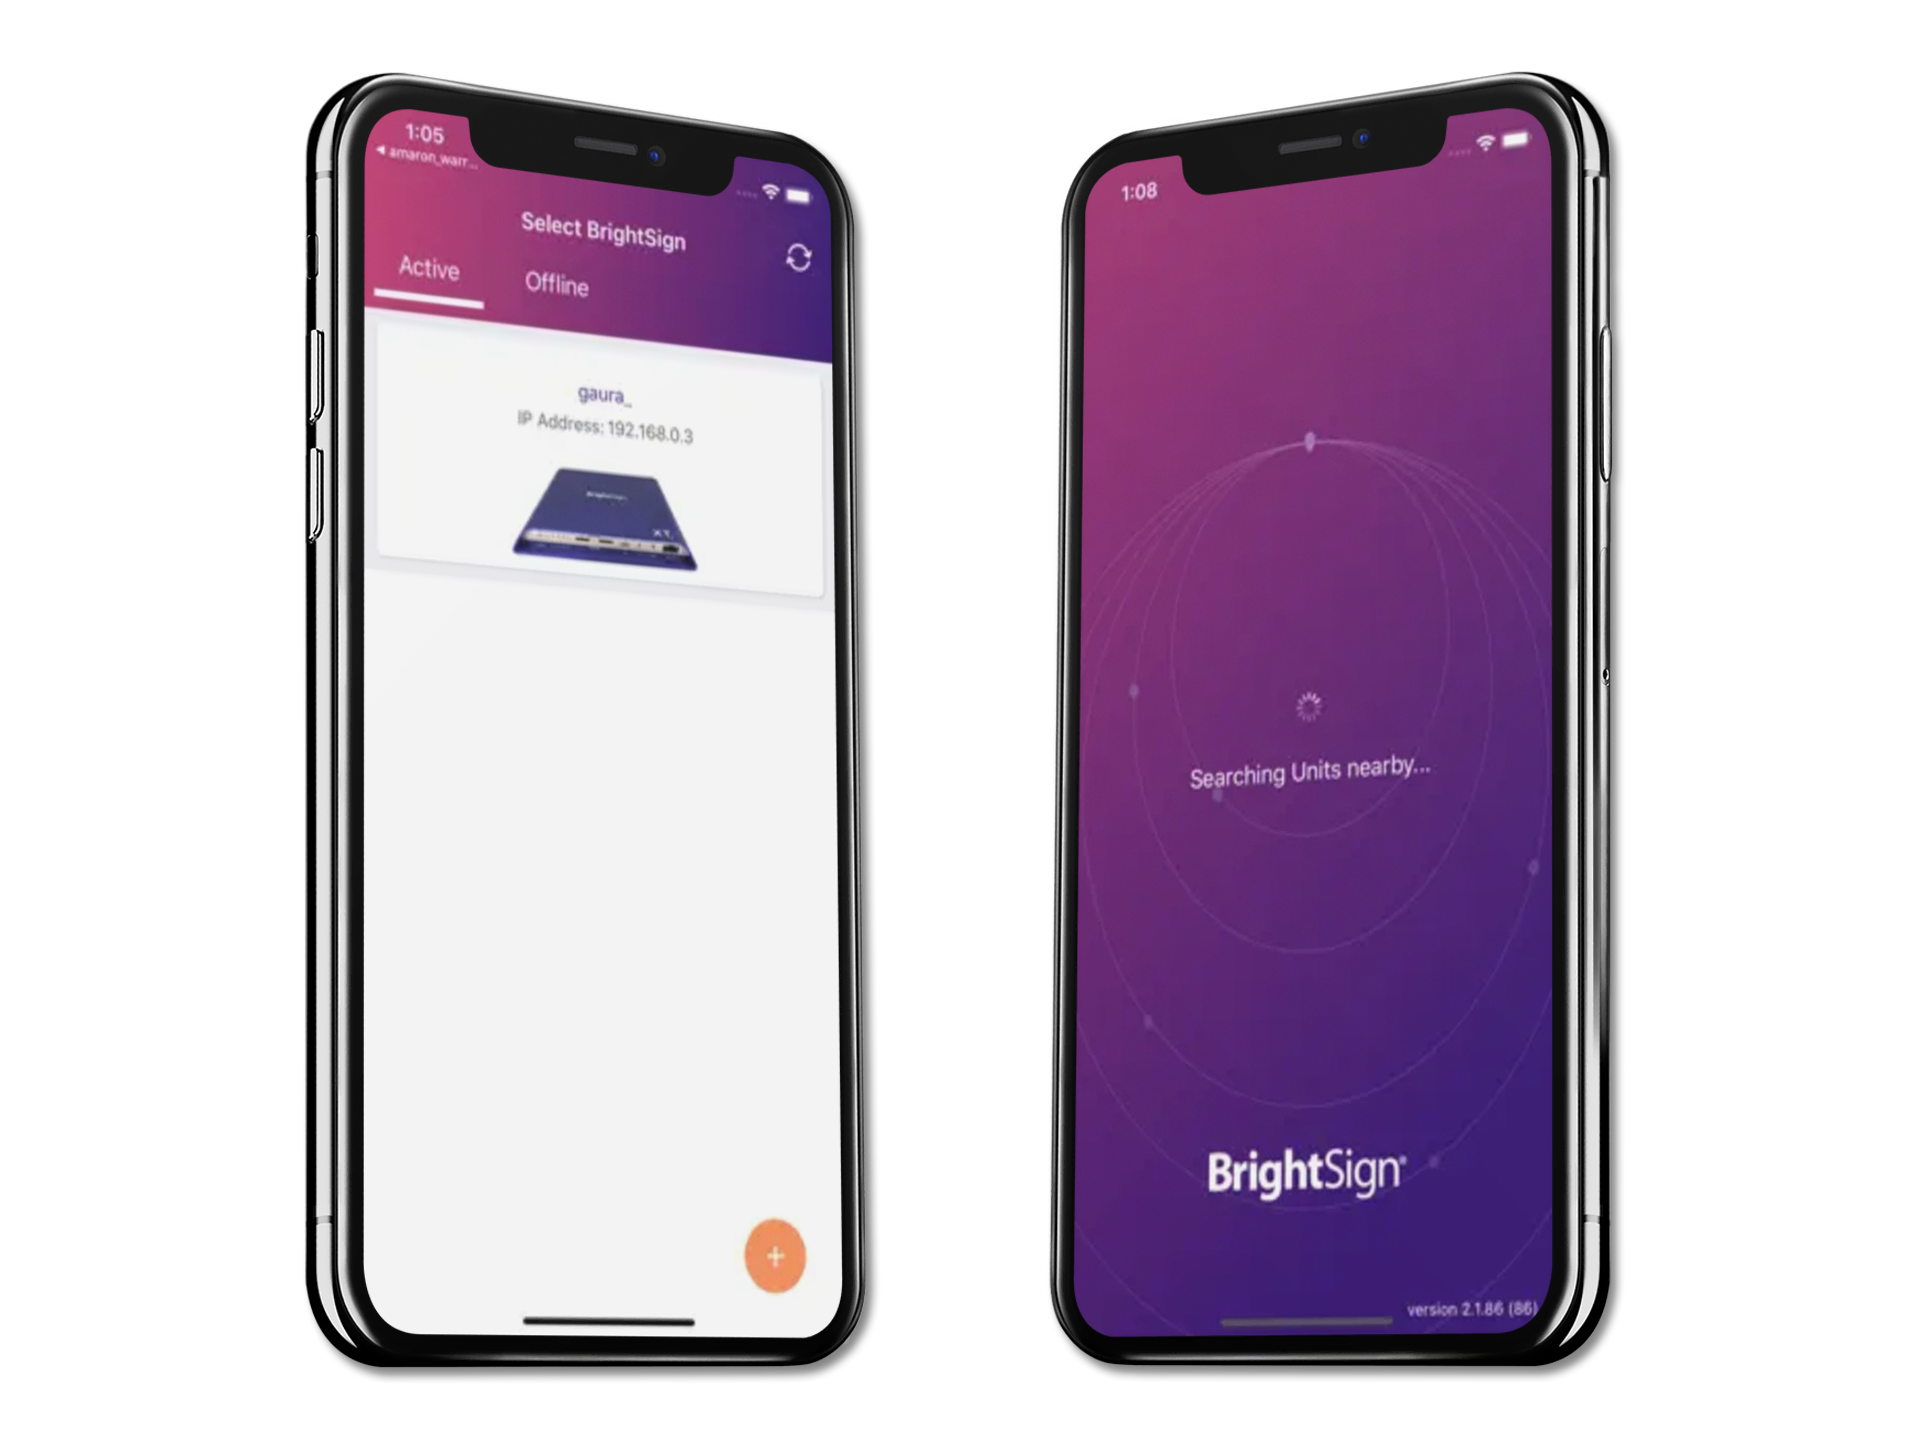 La aplicación BrightSign se muestra en dos teléfonos iPhone X